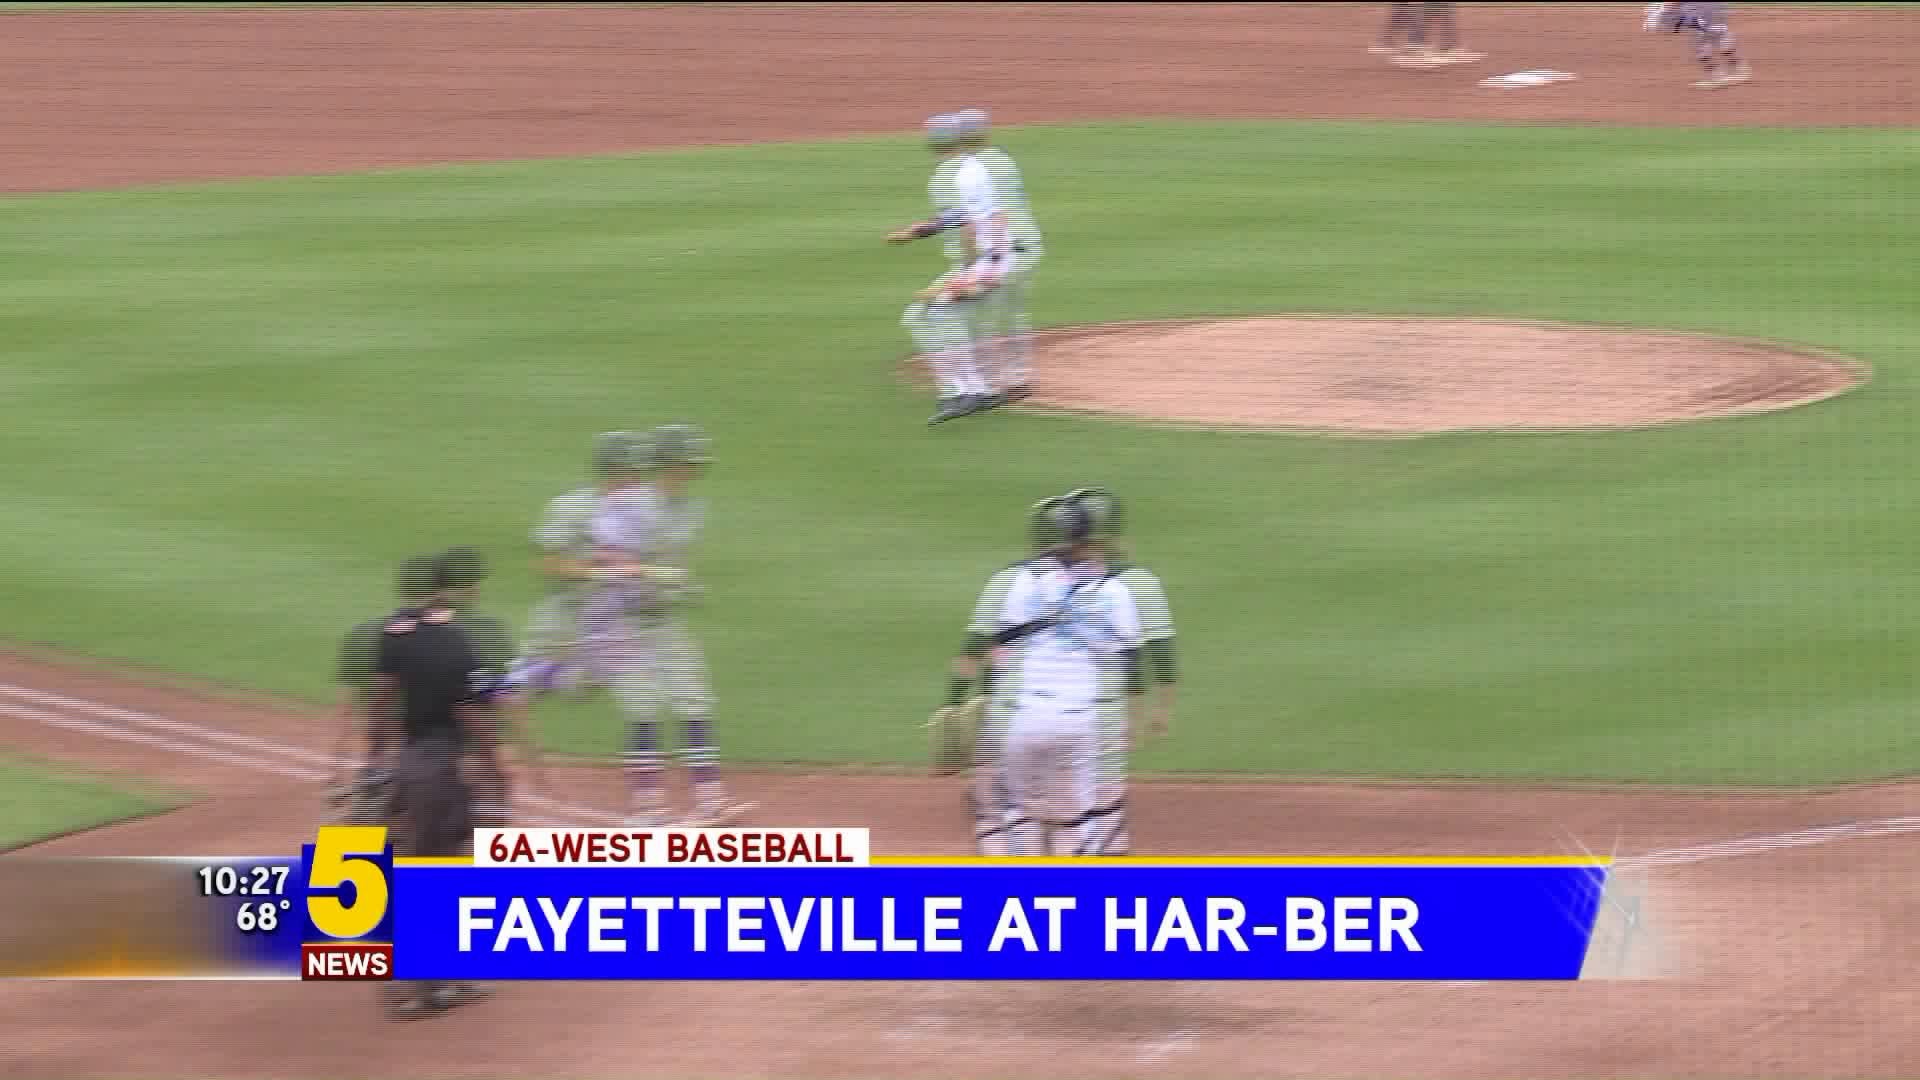 Fayetteville at Har-Ber